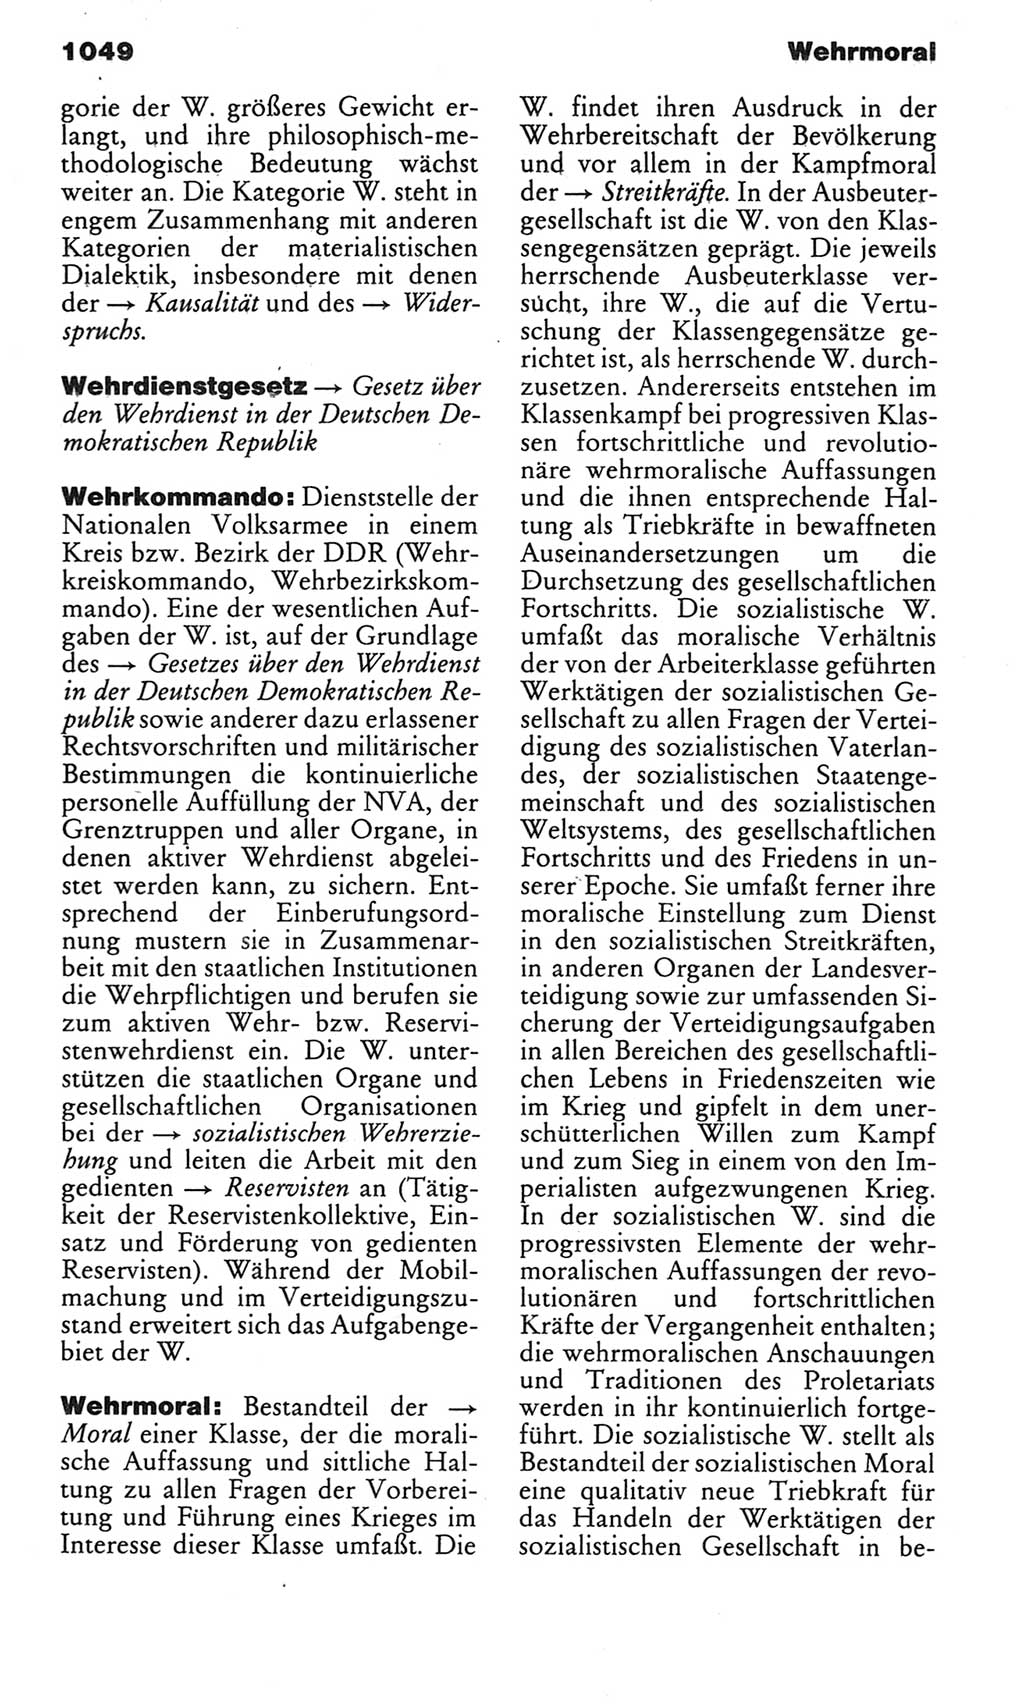 Kleines politisches Wörterbuch [Deutsche Demokratische Republik (DDR)] 1983, Seite 1049 (Kl. pol. Wb. DDR 1983, S. 1049)